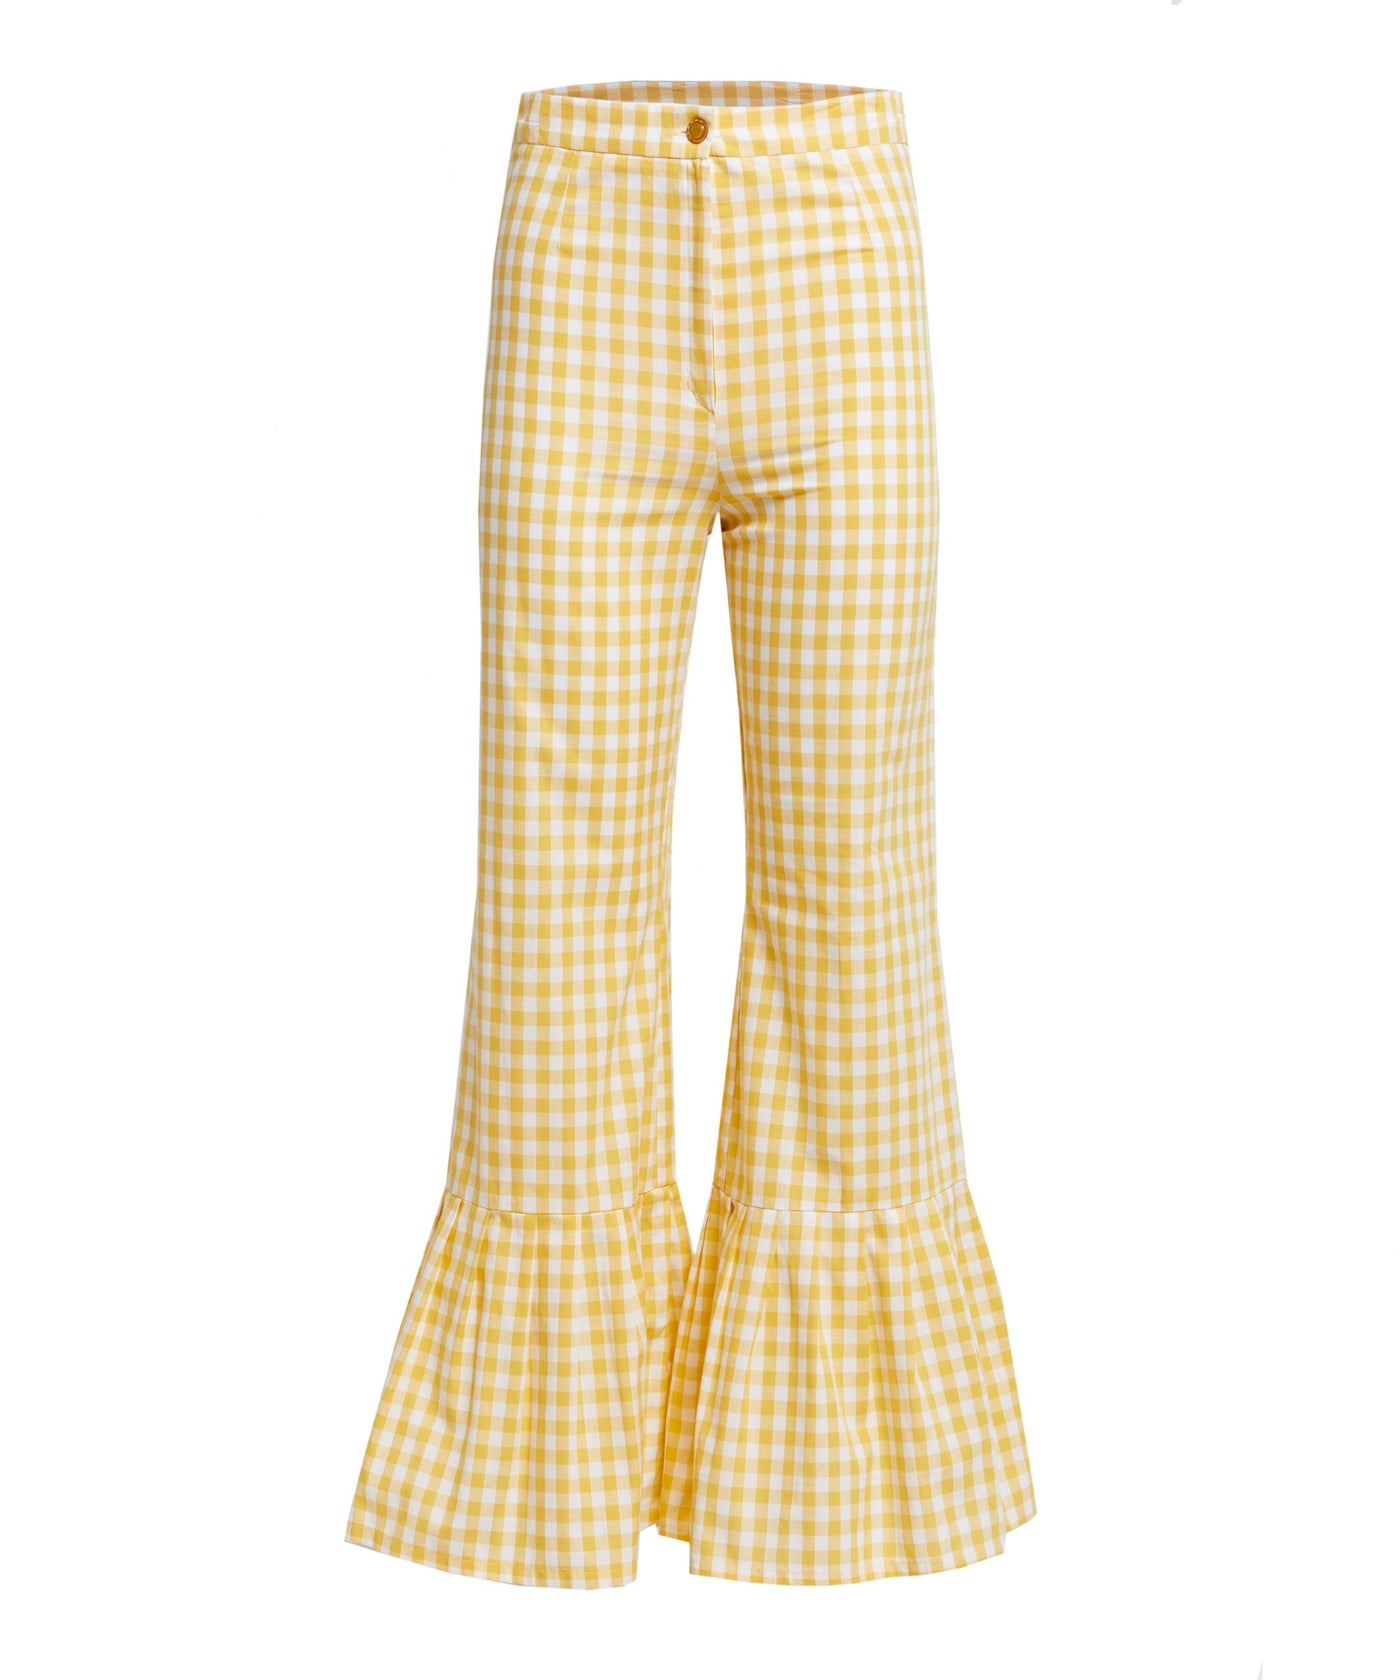 Vichy/Yellow Pants